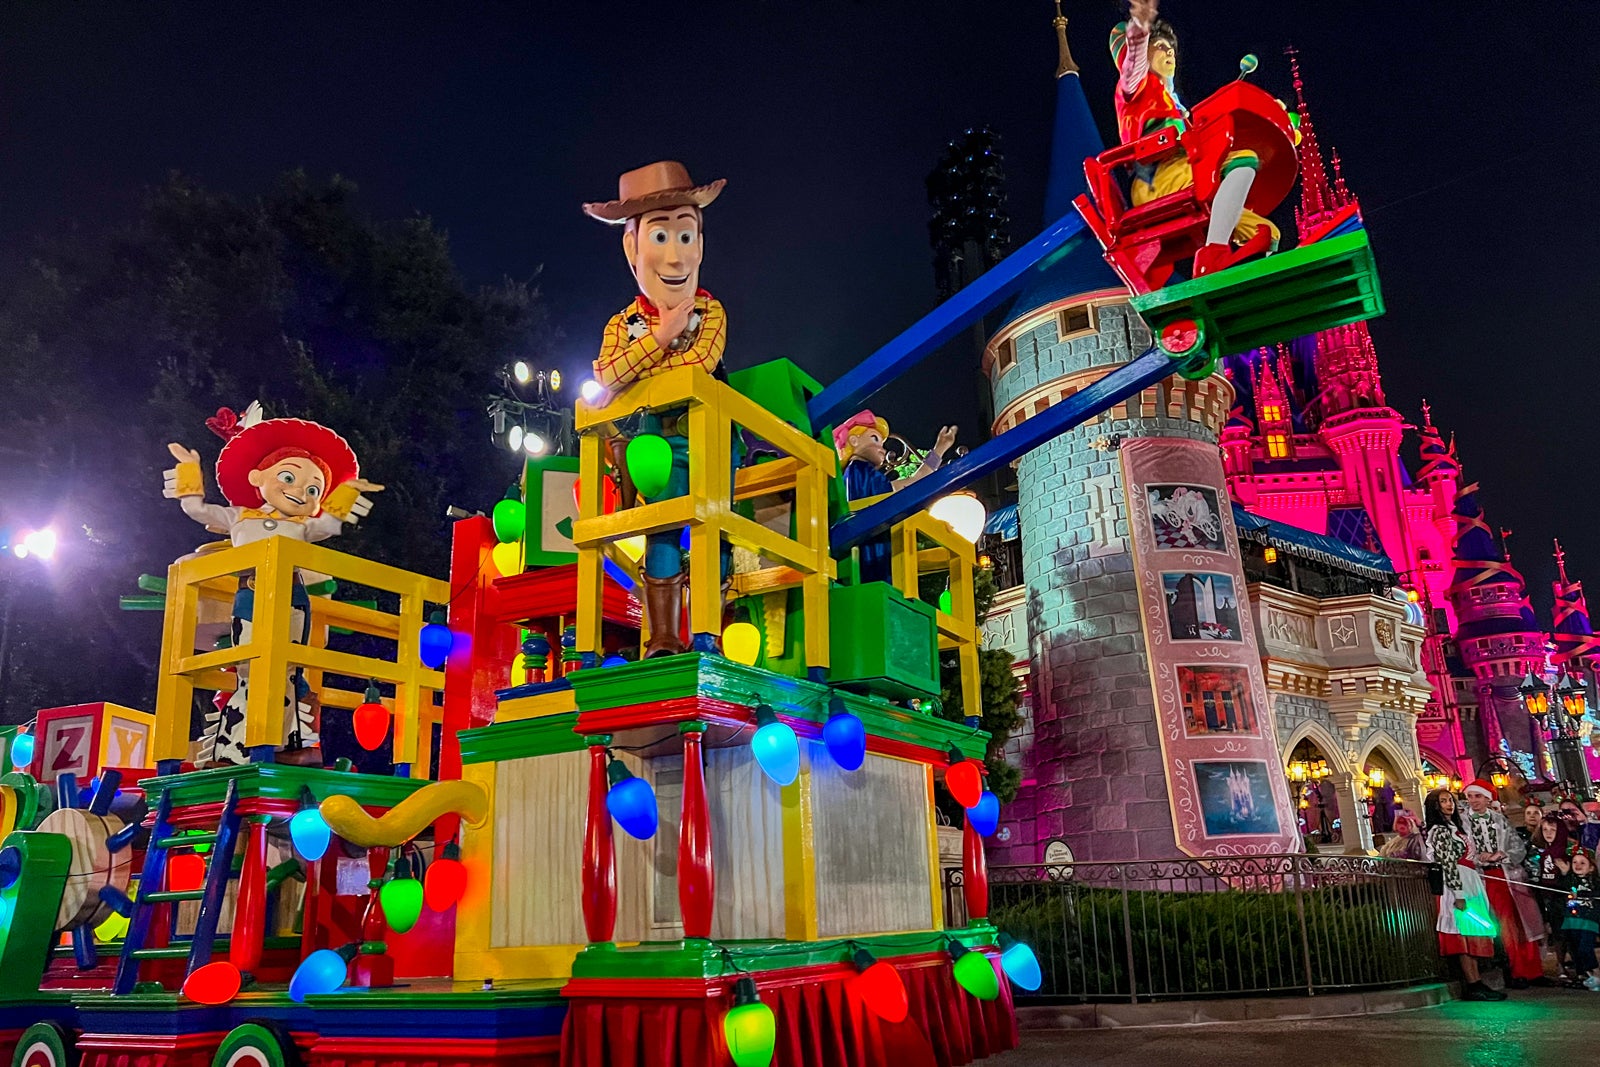 Christmas parade at night at Disney